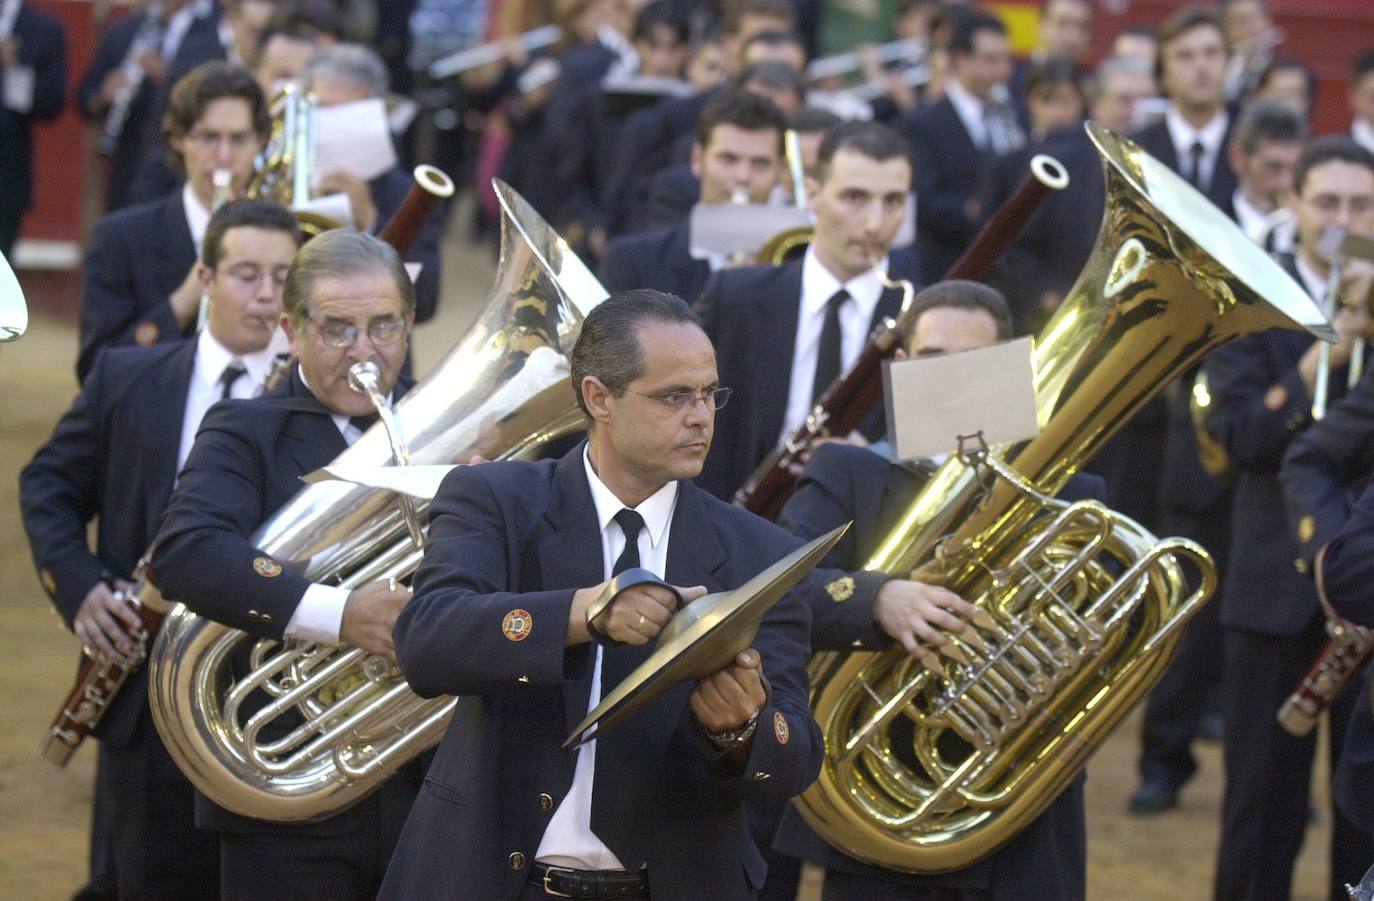 Llíria (Música) | La música es parte fundamental en la identidad de Llíria y es reconocida internacionalmente por su panorama e historia musical, que se remonta al siglo III a. C. A lo largo del año, la ciudad alberga gran variedad de eventos. Bajo el lema 'Sinfonía de culturas', Llíria, es Ciudad de la Música de la Unesco desde 2019. 